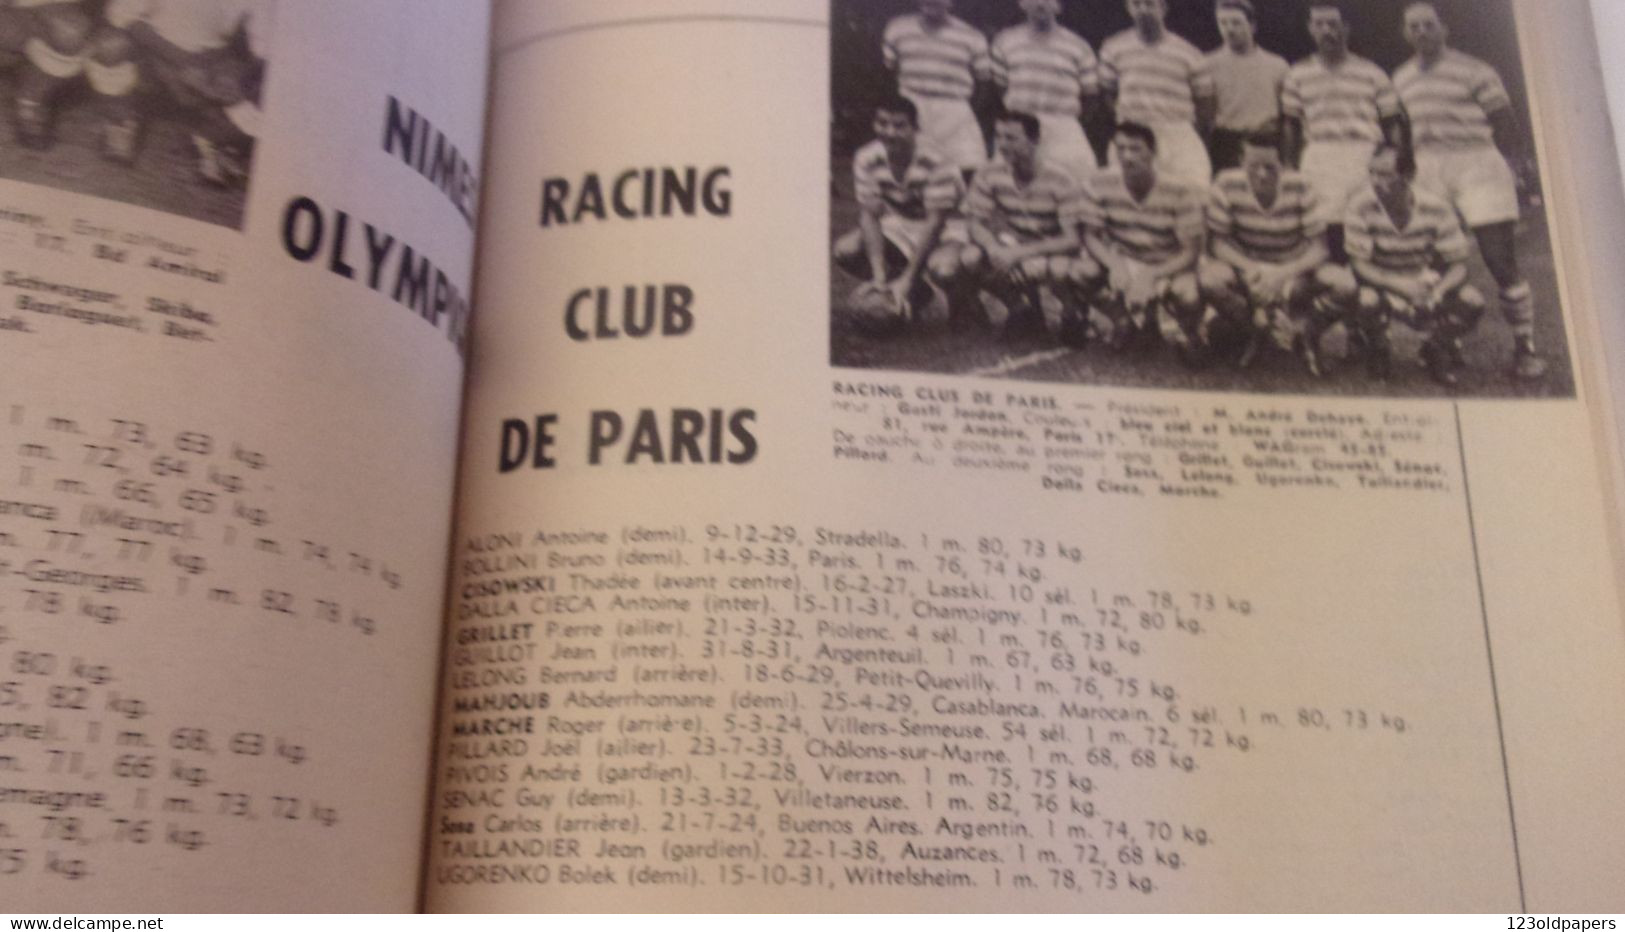 Revue FRANCE FOOTBALL 1958. Numéro Spécial. EQUIPES.. 192 PAGES ILLUSTRE COUVERTURE PAUL ORDNER - Sport